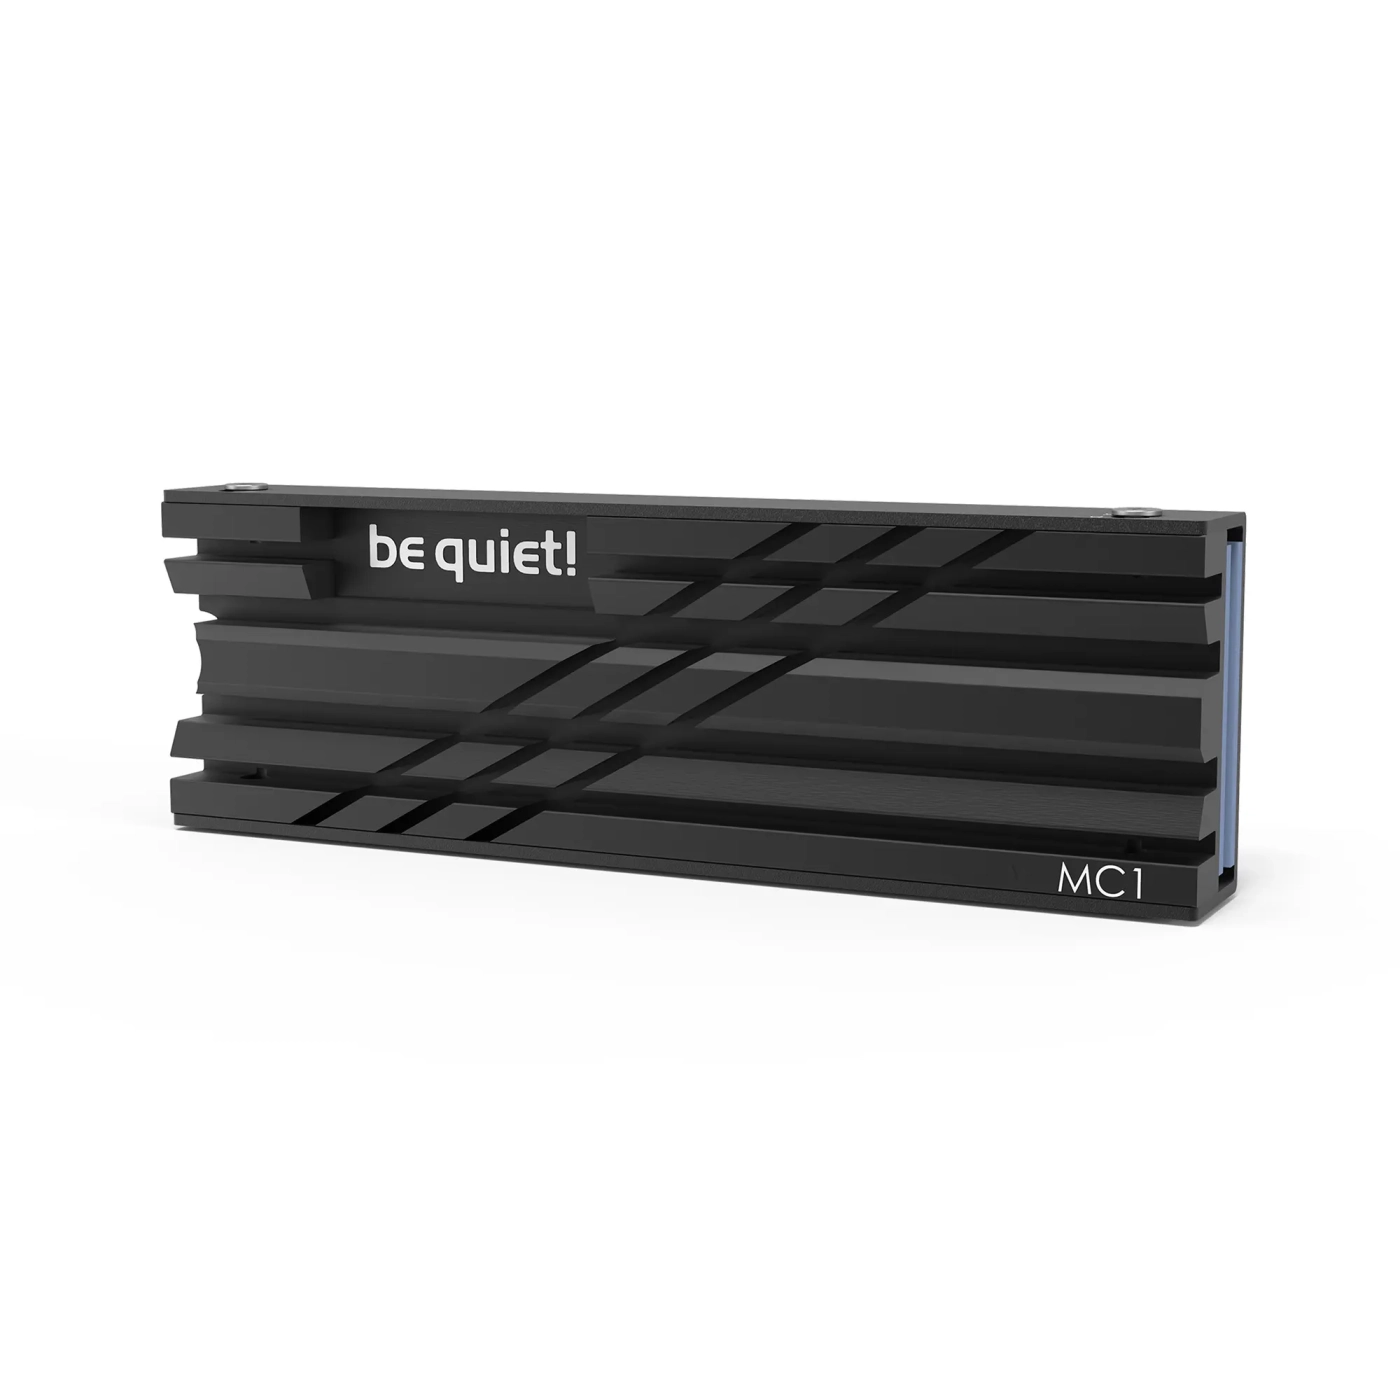 Купить Радиатор для SSD be quiet! MC1 (BZ002) - фото 1